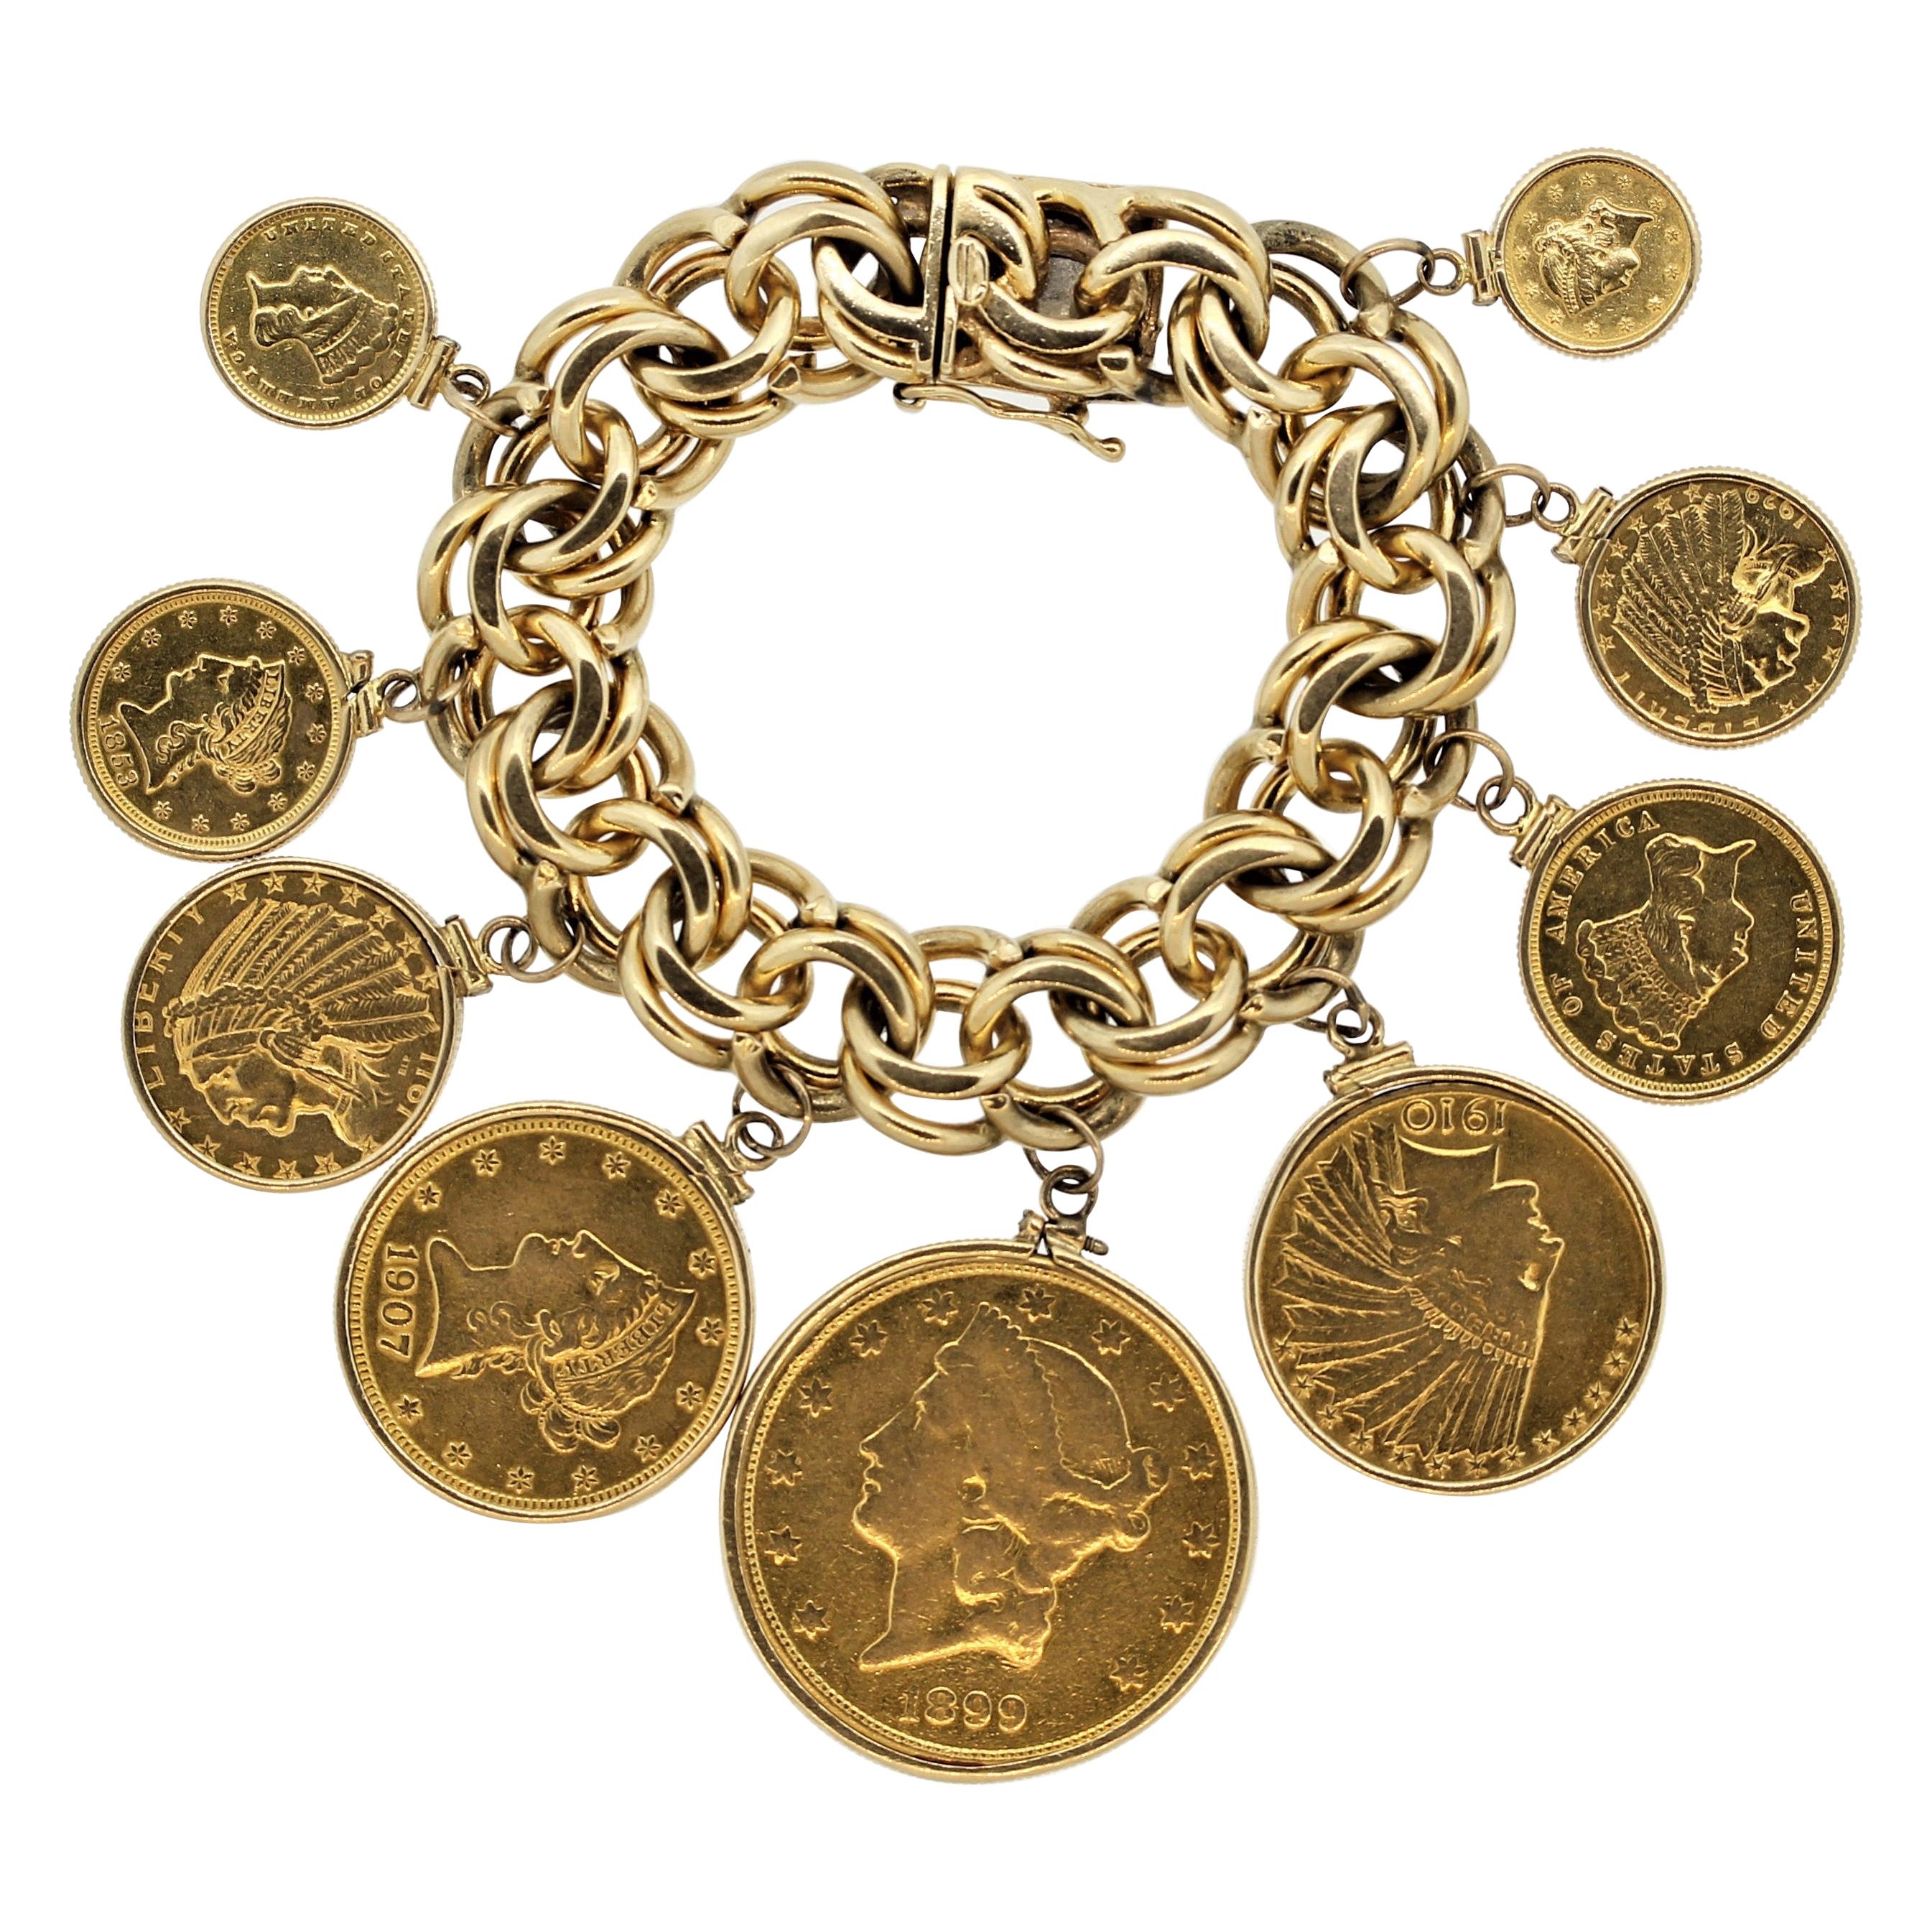 US Antique Gold Coin Charm Bracelet